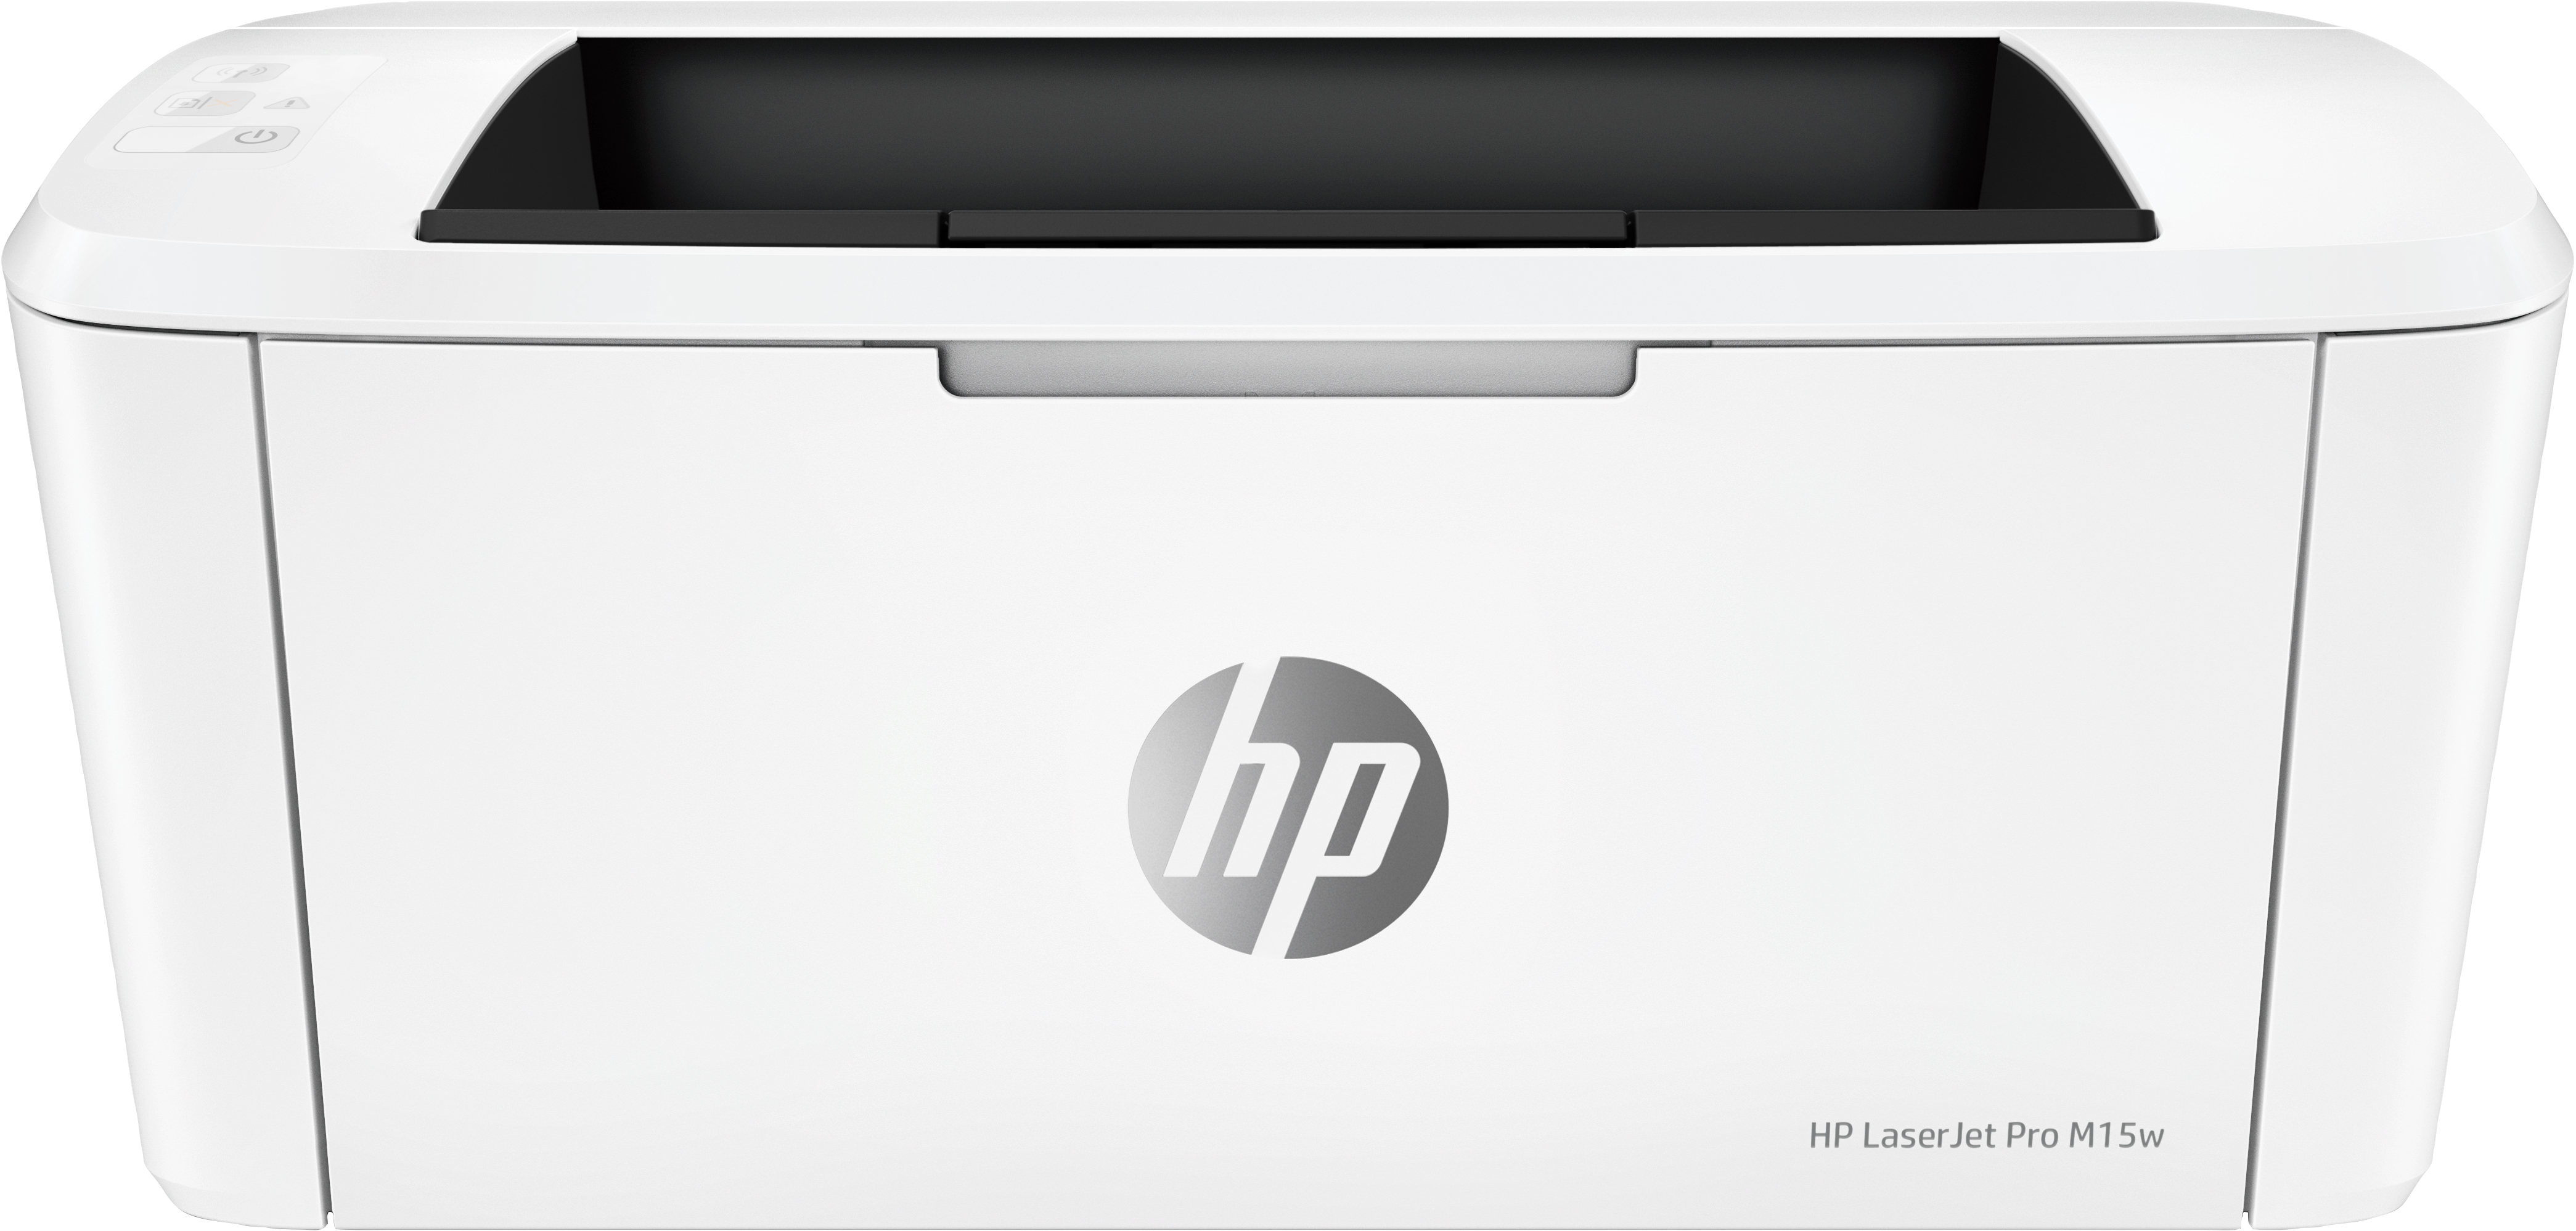 HP Laserjet Pro M15w 600 x 600DPI A4 WiFi